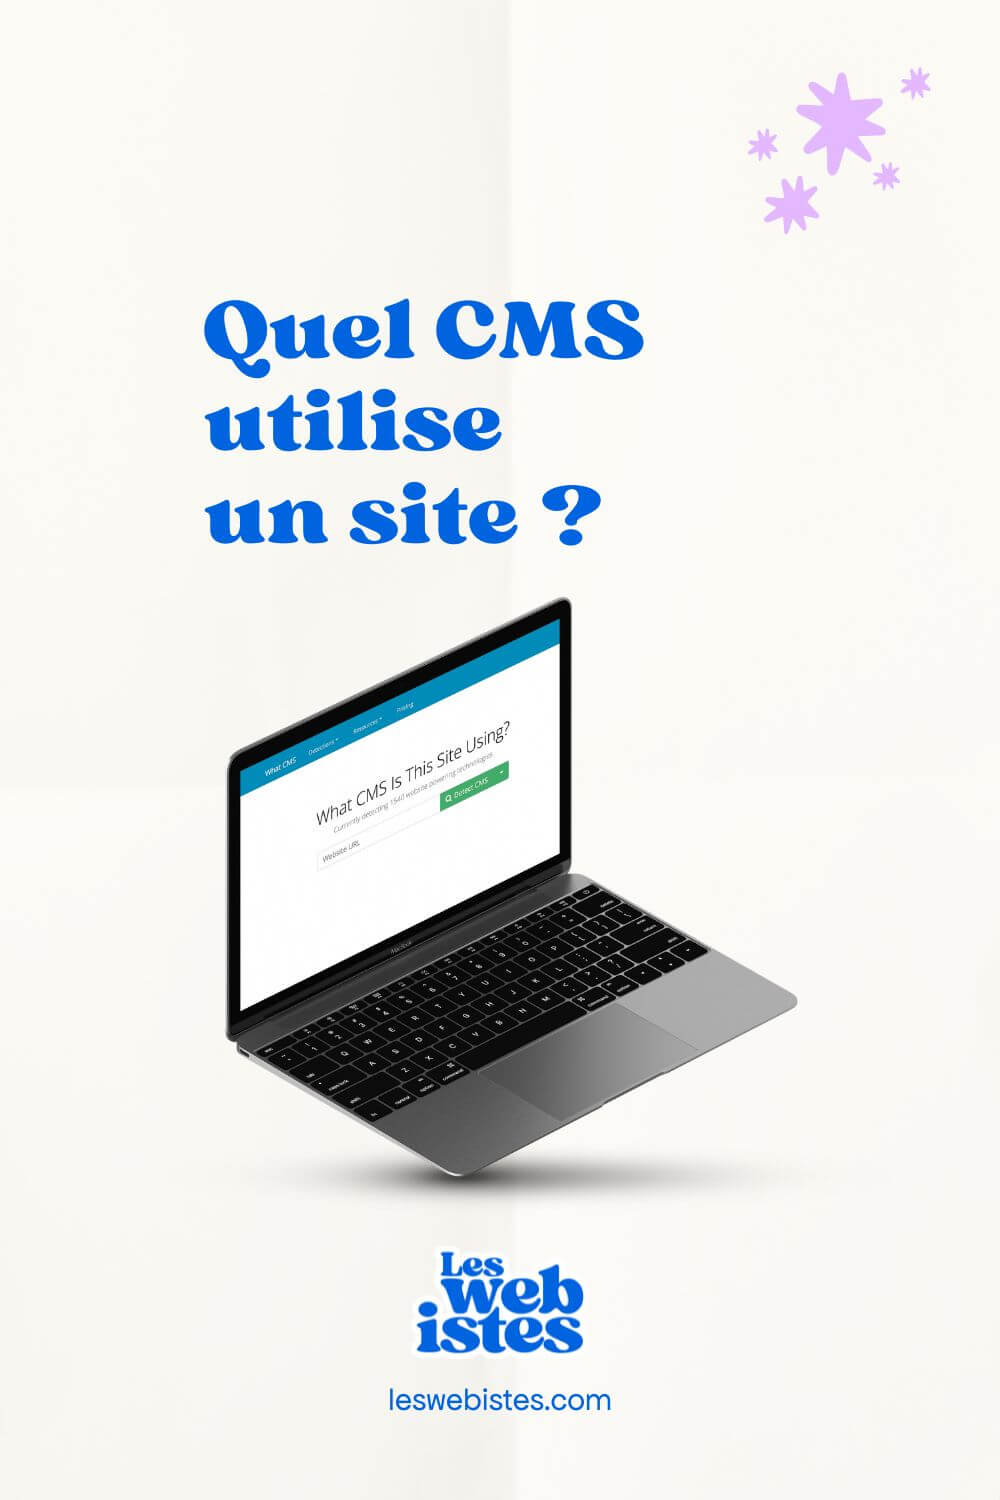 Quel CMS utilise un site ?